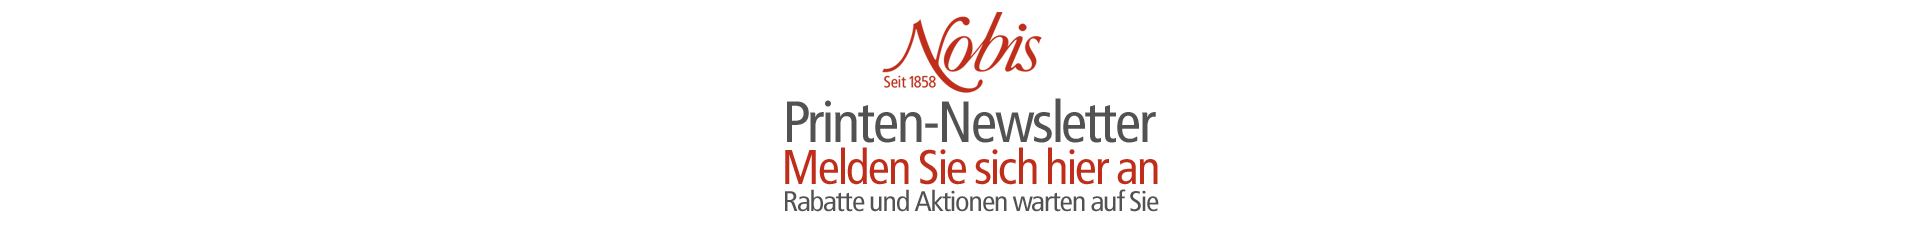 Nobis-Aachen-Weichprinten